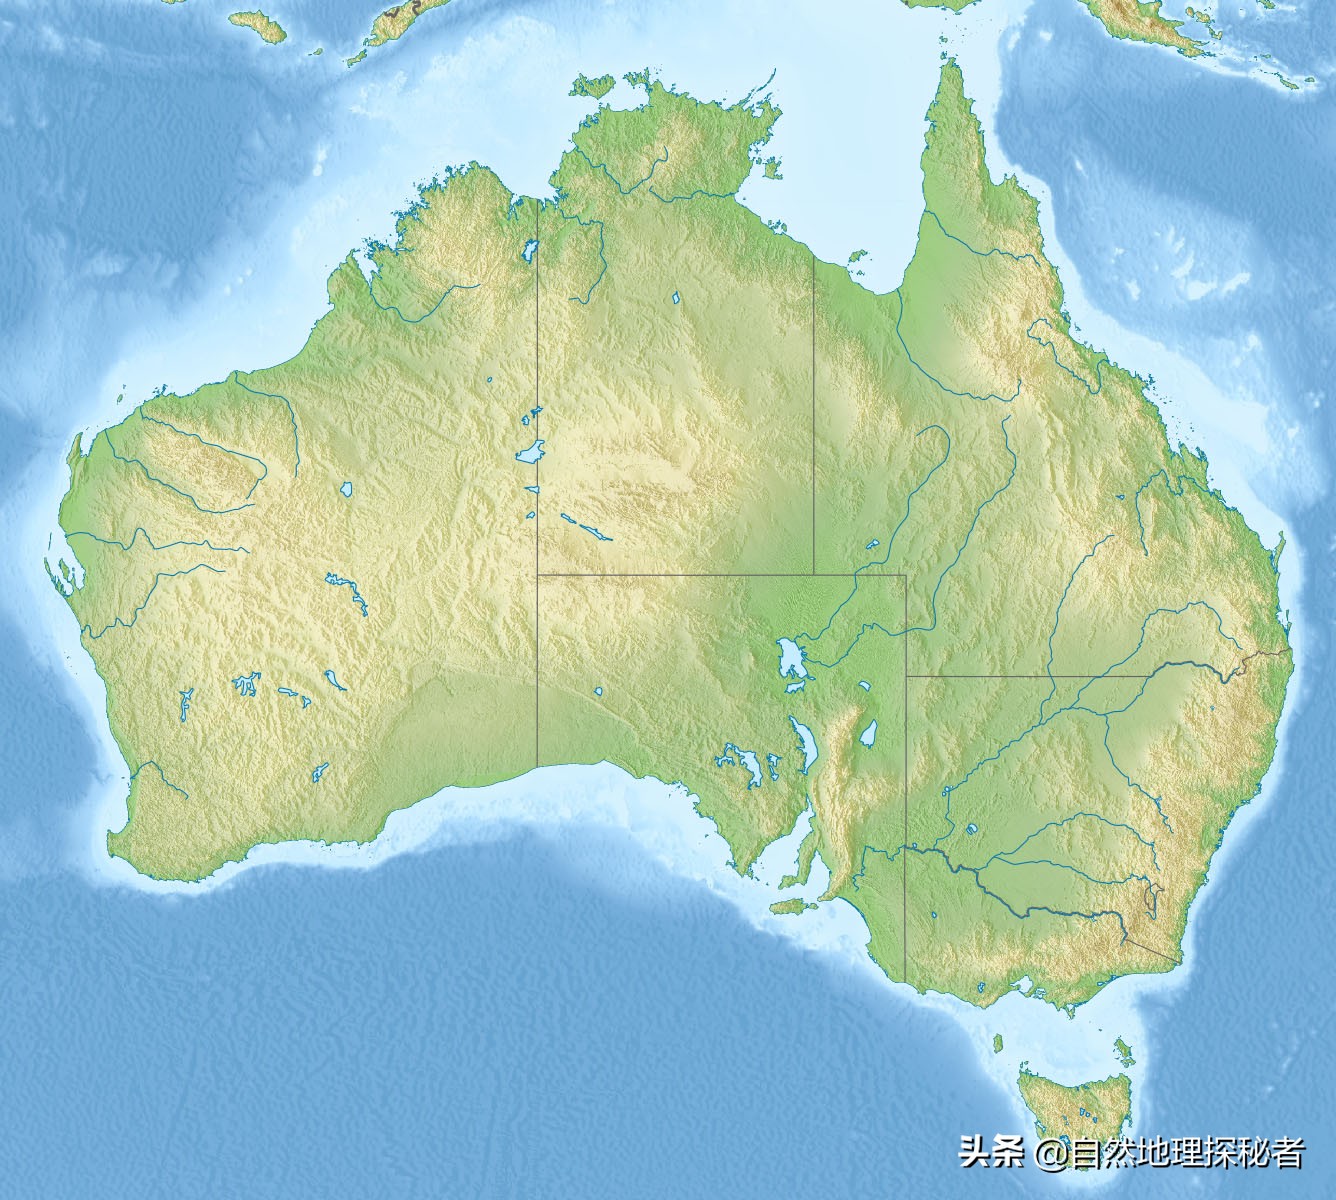 独占了一个大陆的澳大利亚，看这自然地理环境真不咋样